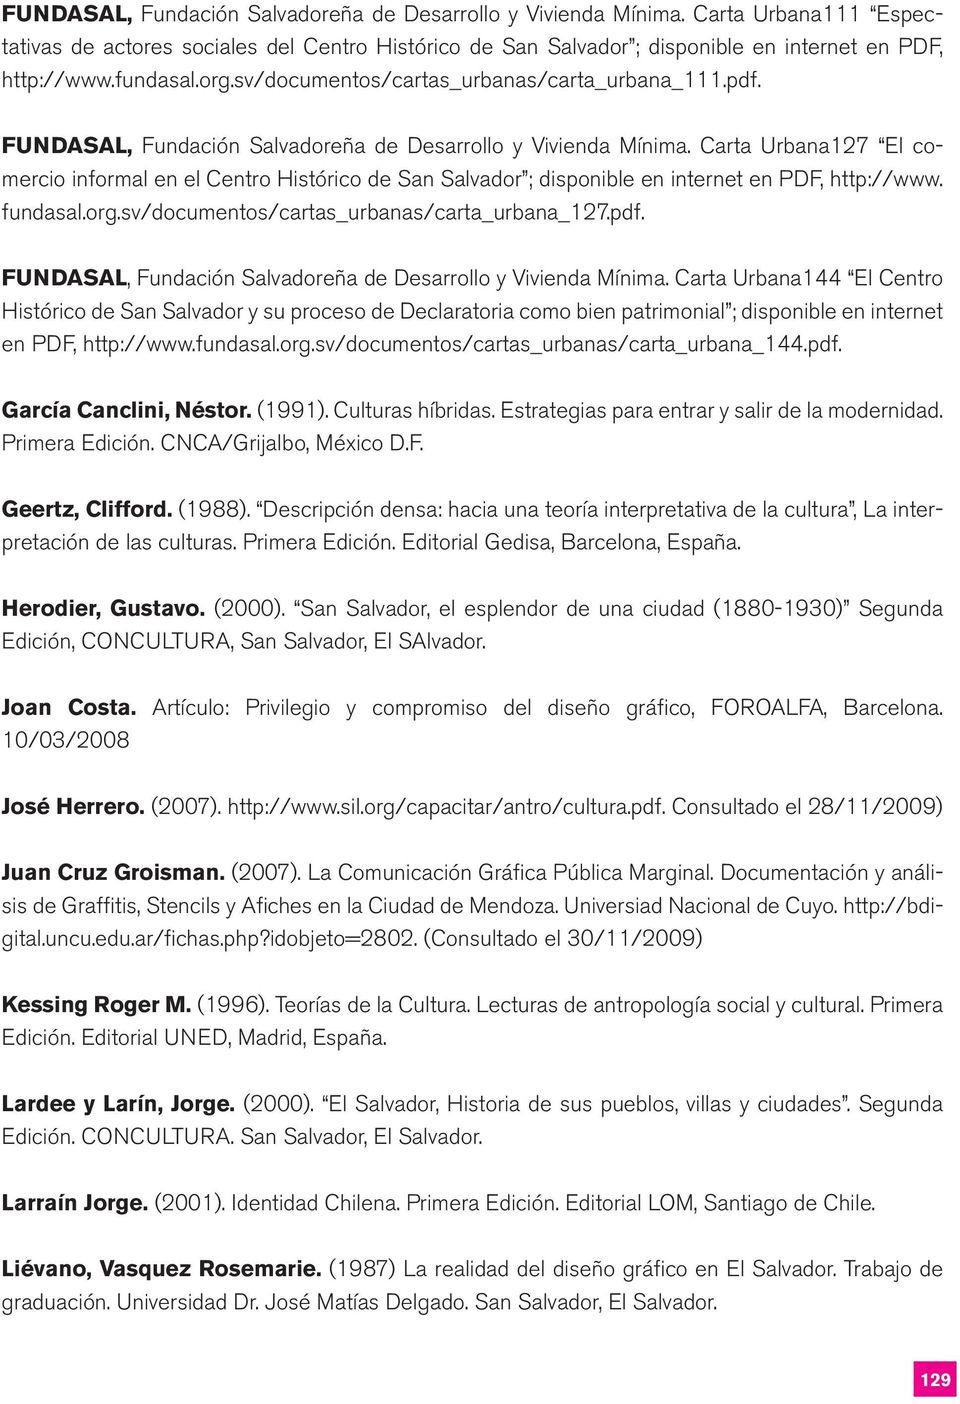 Carta Urbana127 El comercio informal en el Centro Histórico de San Salvador ; disponible en internet en PDF, http://www. fundasal.org.sv/documentos/cartas_urbanas/carta_urbana_127.pdf.